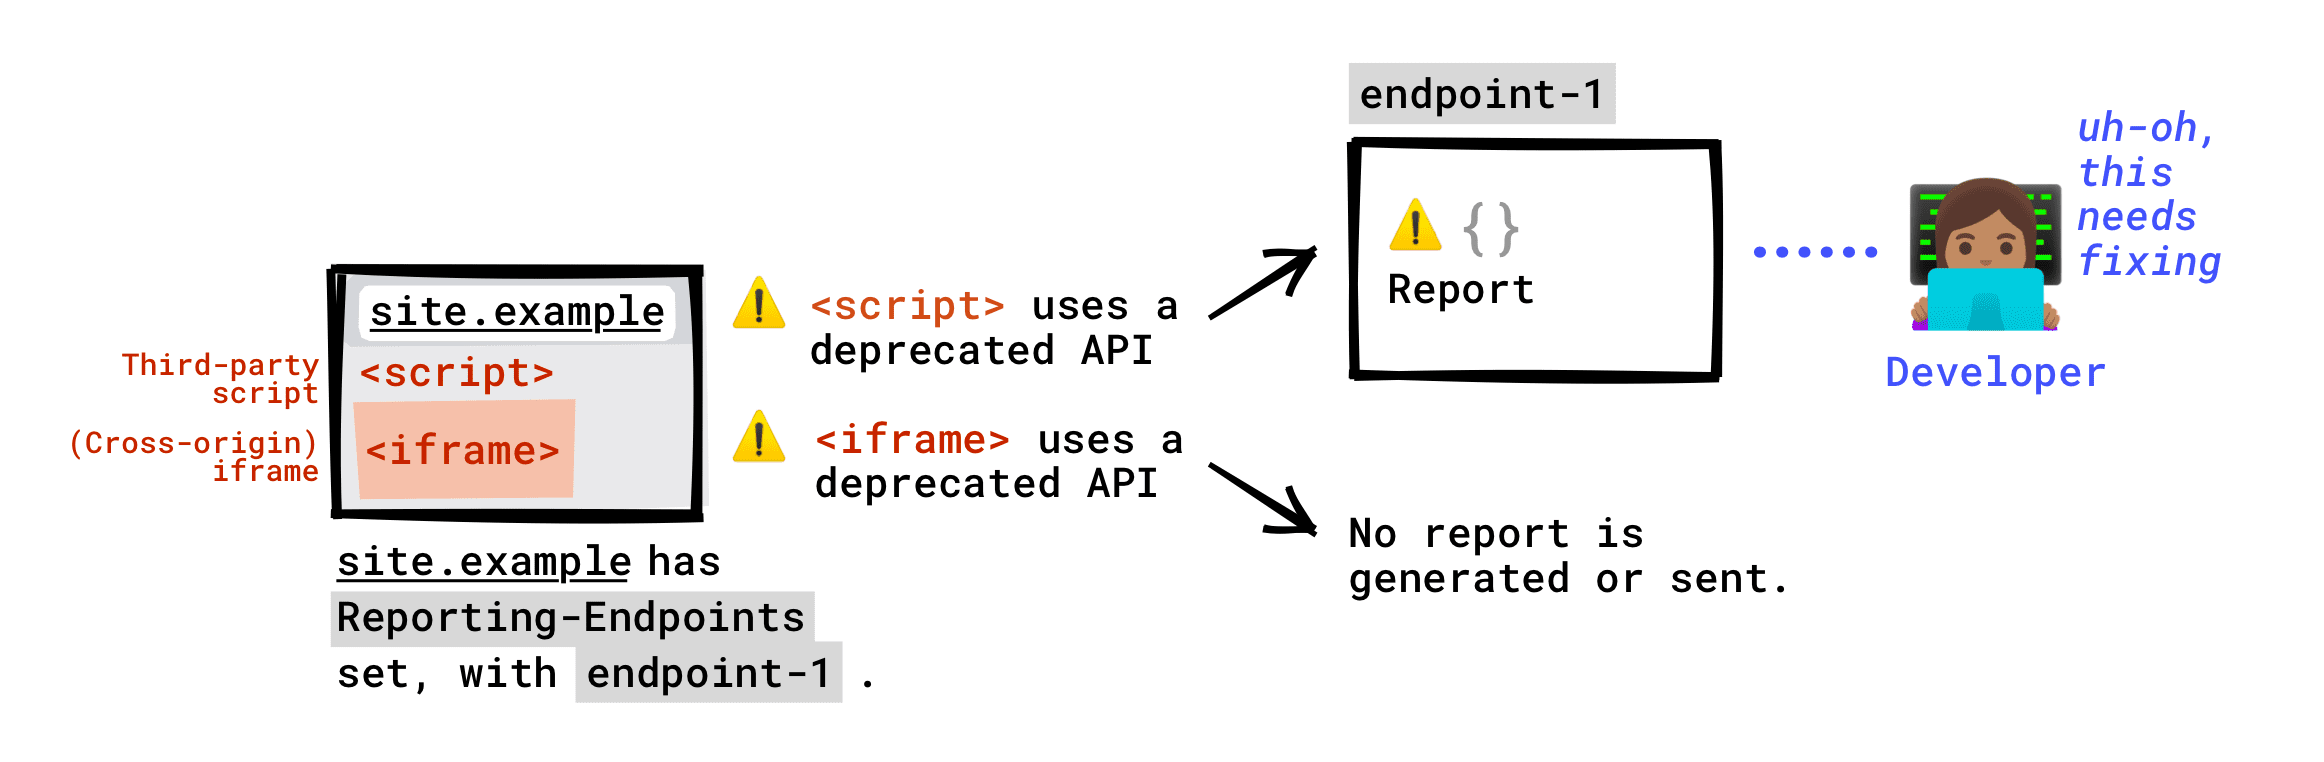 페이지에 Reporting-Endpoint 헤더가 설정된 경우, 페이지에서 실행 중인 서드 파티 스크립트에 의해 호출된 지원 중단된 API가 엔드포인트에 보고됩니다. 페이지에 삽입된 iframe에서 호출된 지원 중단된 API는 엔드포인트로 보고되지 않습니다. 지원 중단 보고서는 iframe 서버에서 Reporting-Endpoint를 설정한 경우에만 생성되며, 이 보고서는 iframe 서버에서 설정한 엔드포인트로 전송됩니다.